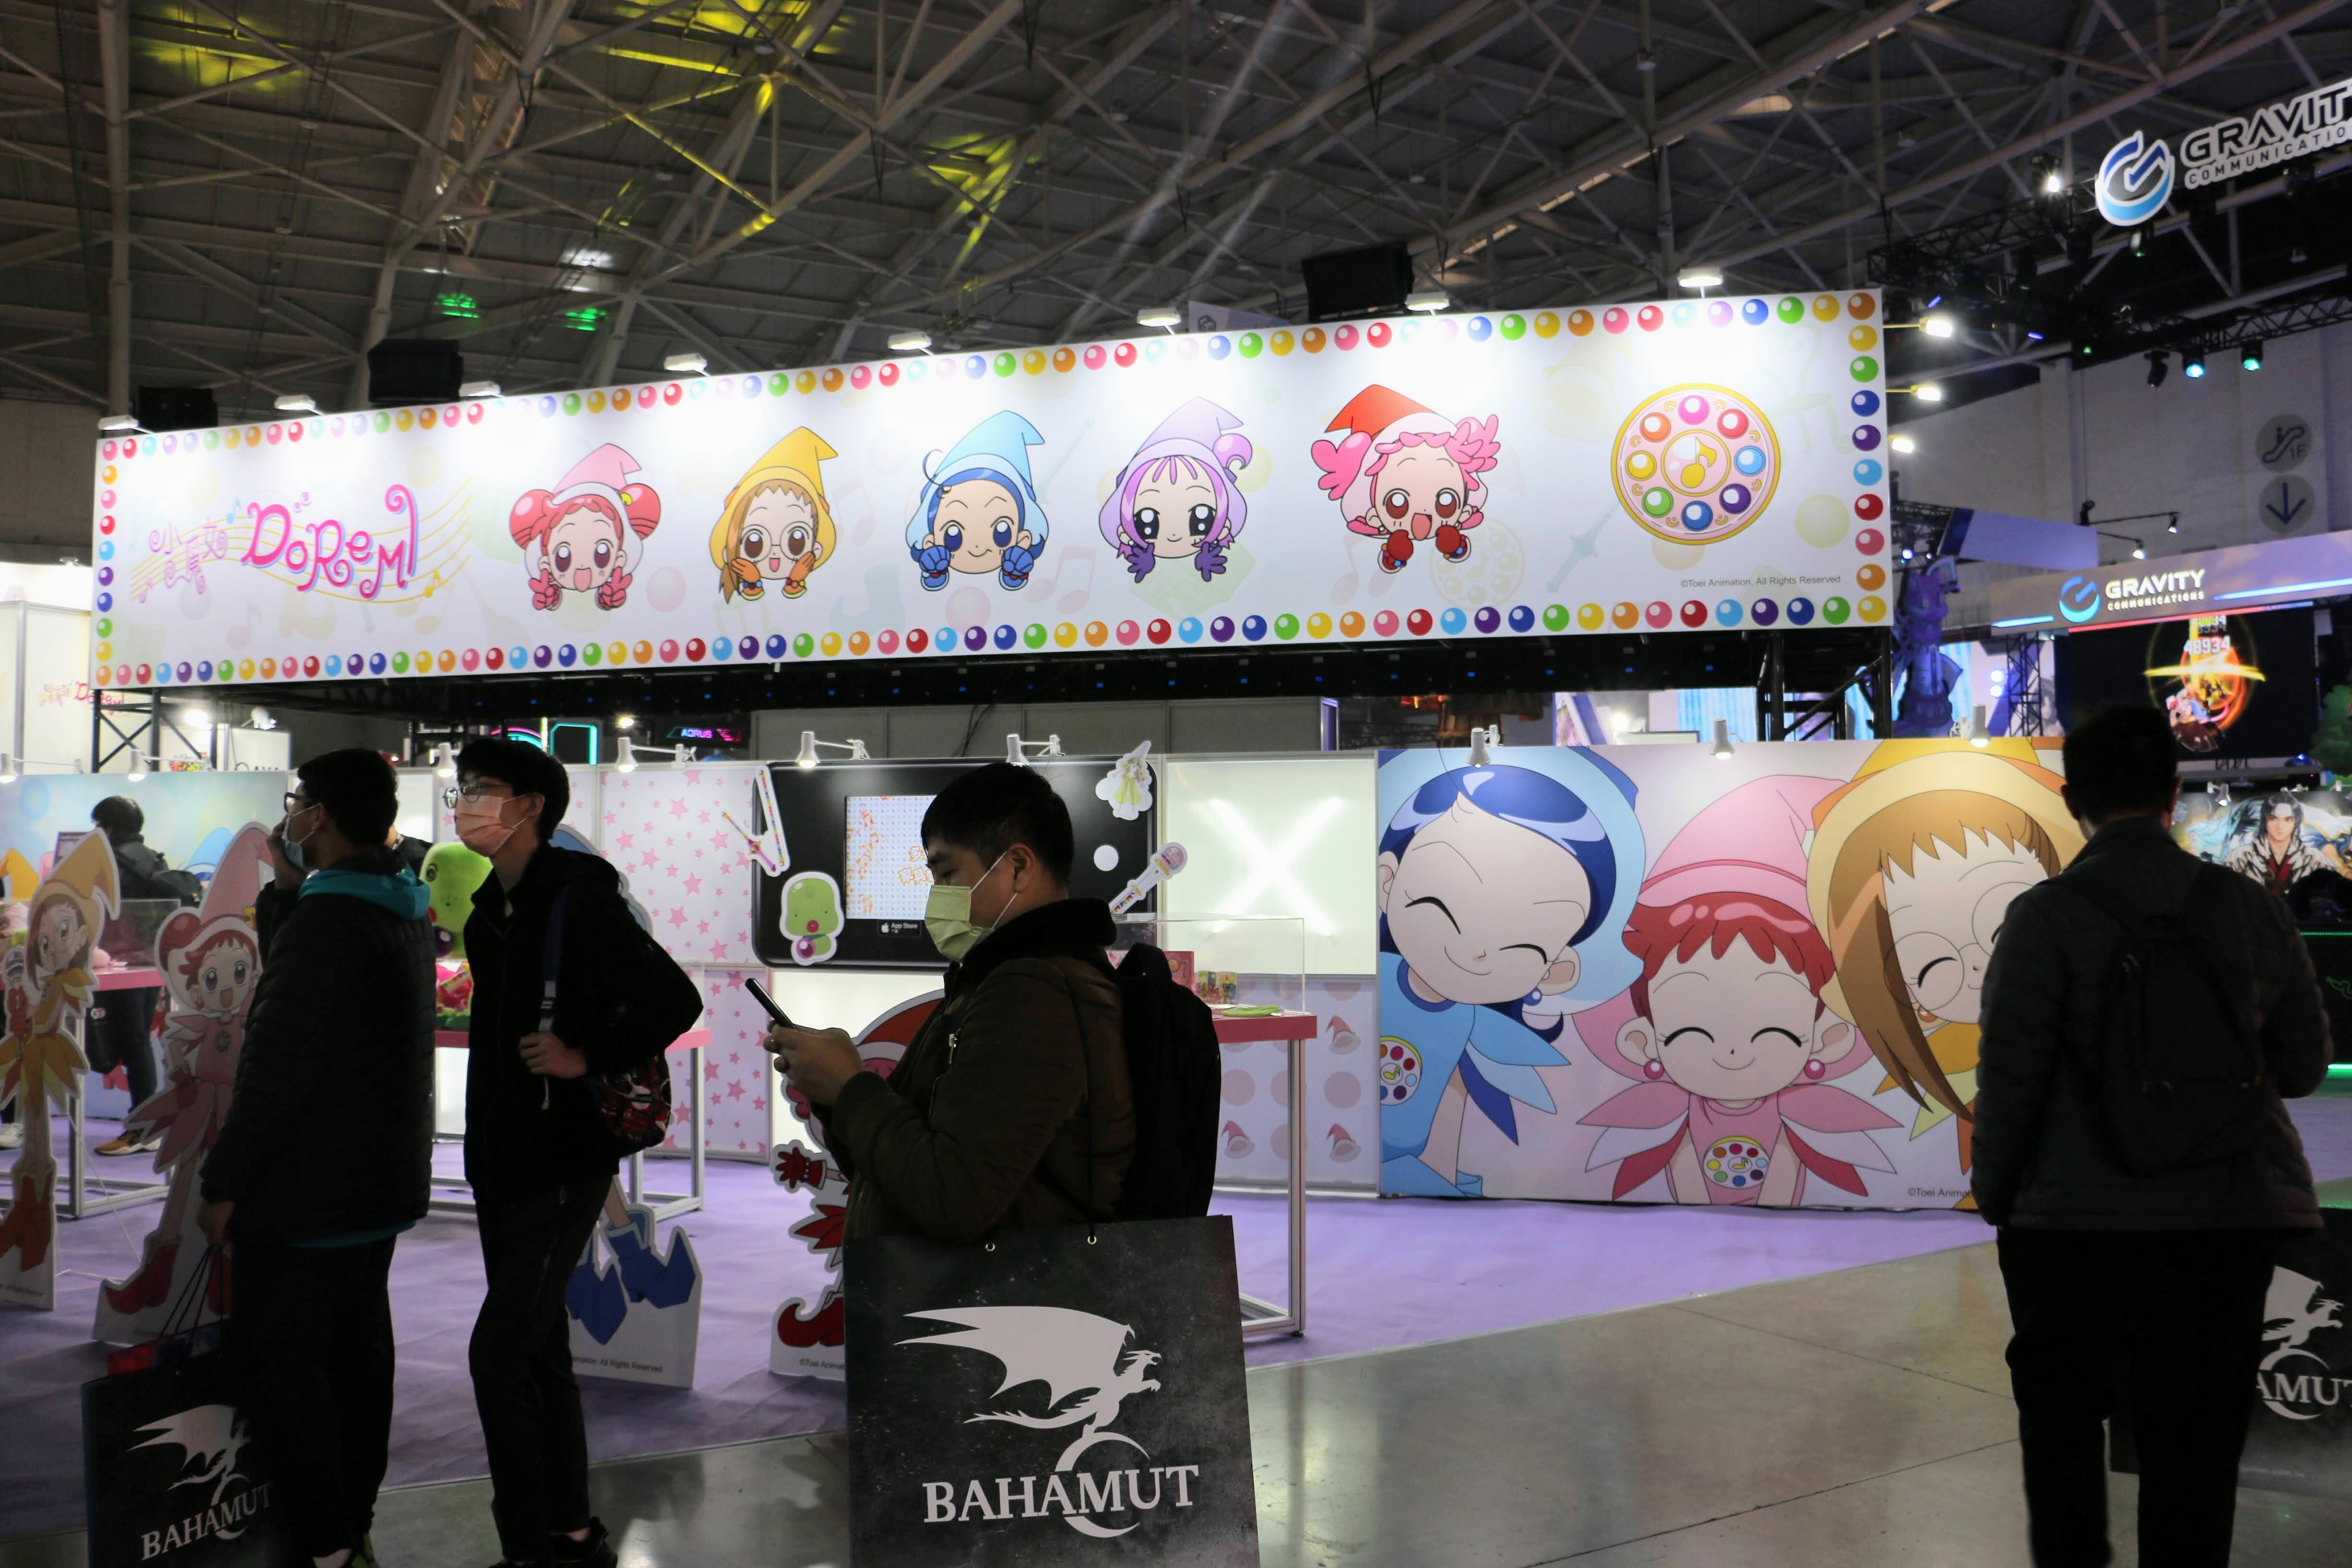 《小魔女 DoReMi》手机新作于台北电玩展首次亮相 释出开发中游戏画面插图2